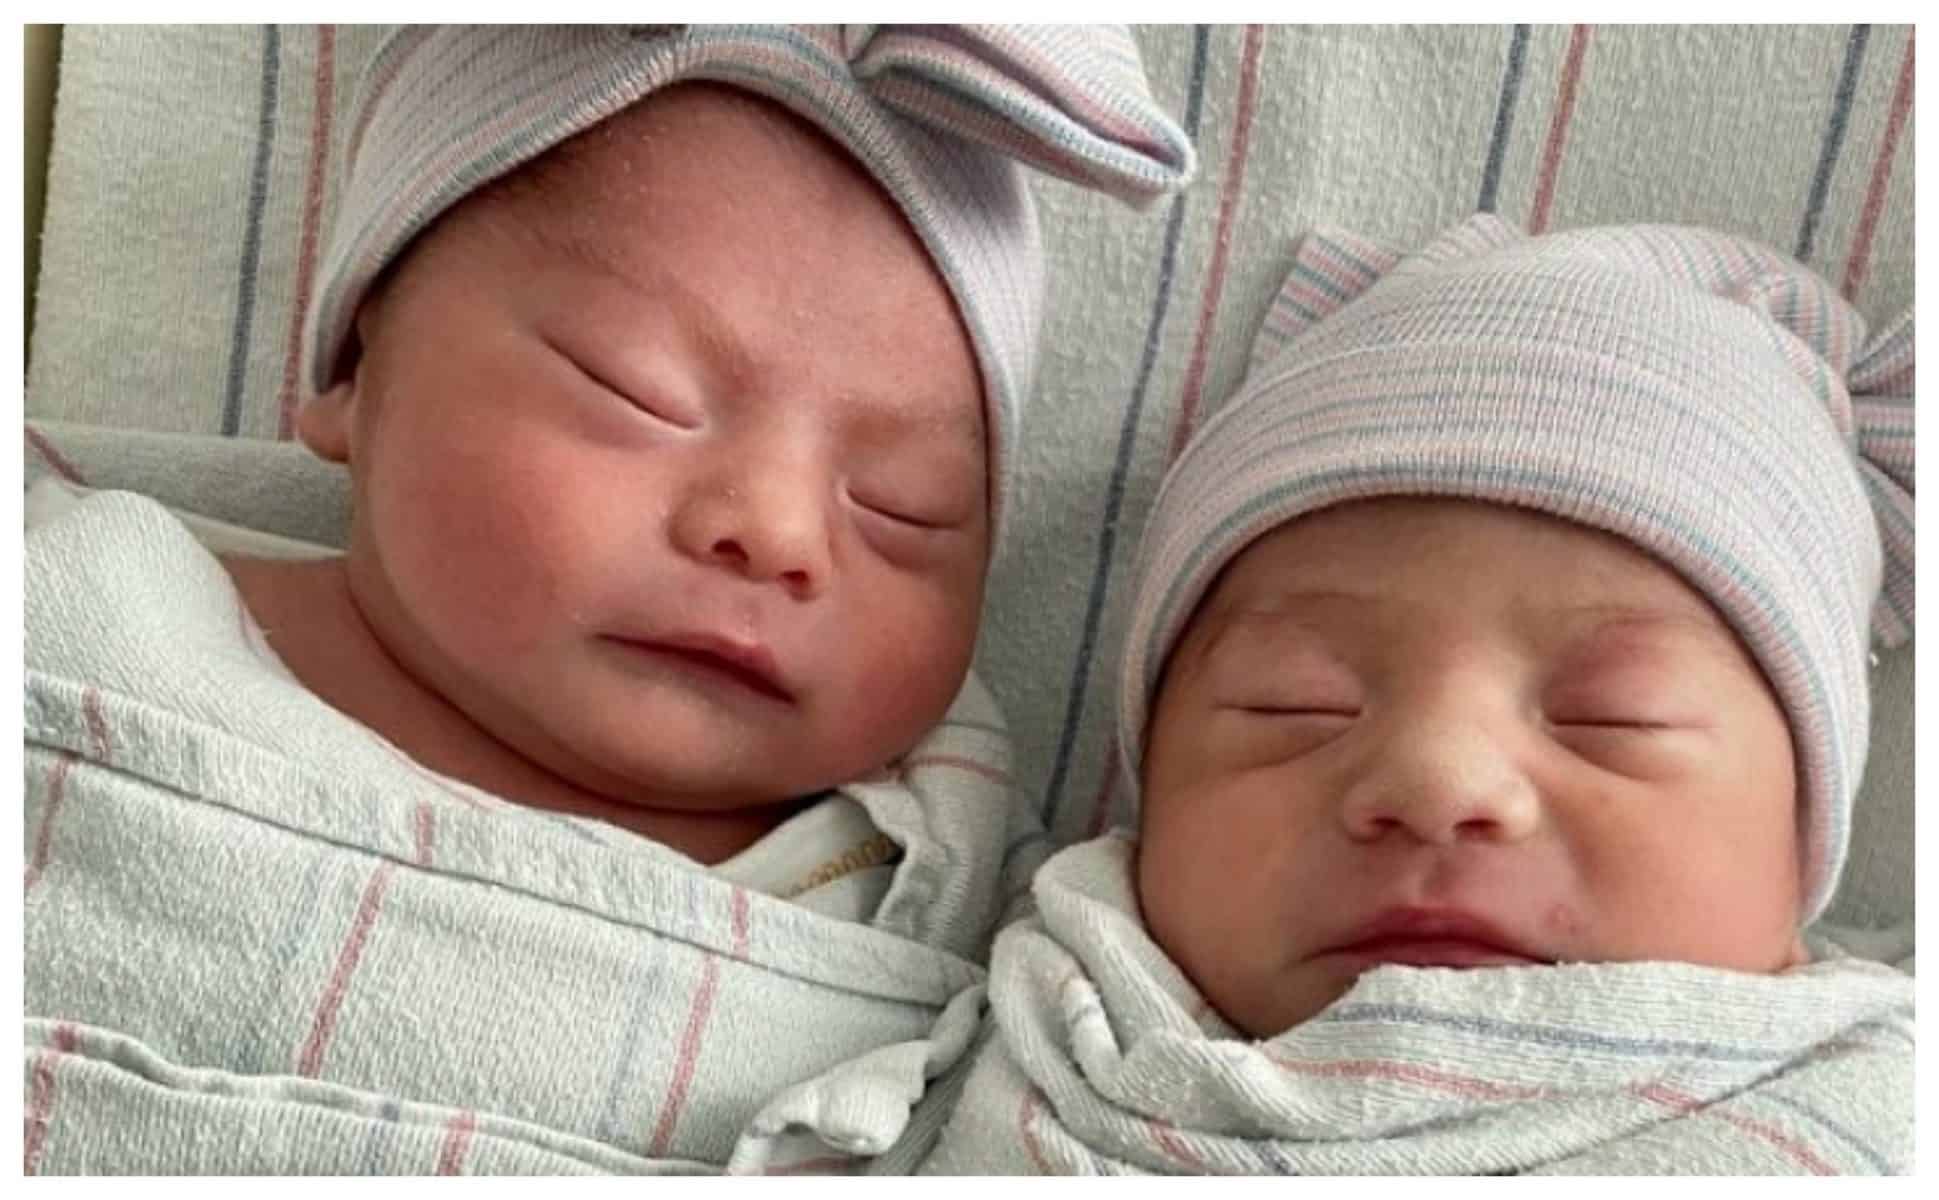 doi gemeni s-au născut în zile, luni și ani diferiți